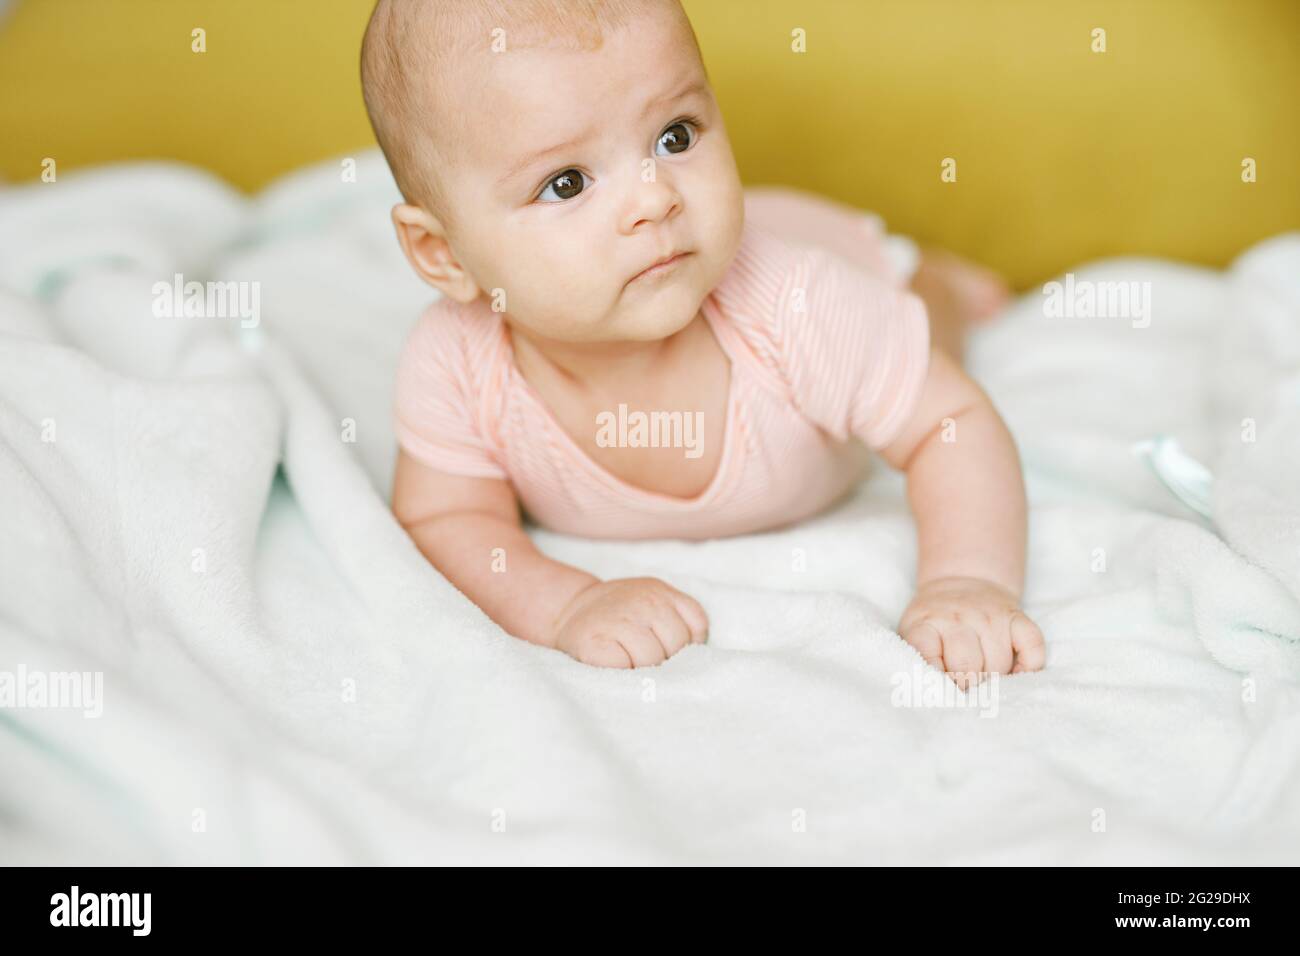 Entzückendes Baby im sonnigen Schlafzimmer. Das neugeborene Baby ruht in einer warmen, weichen Bettdecke. Lächelndes Kind, das die Kamera anschaut. Stockfoto